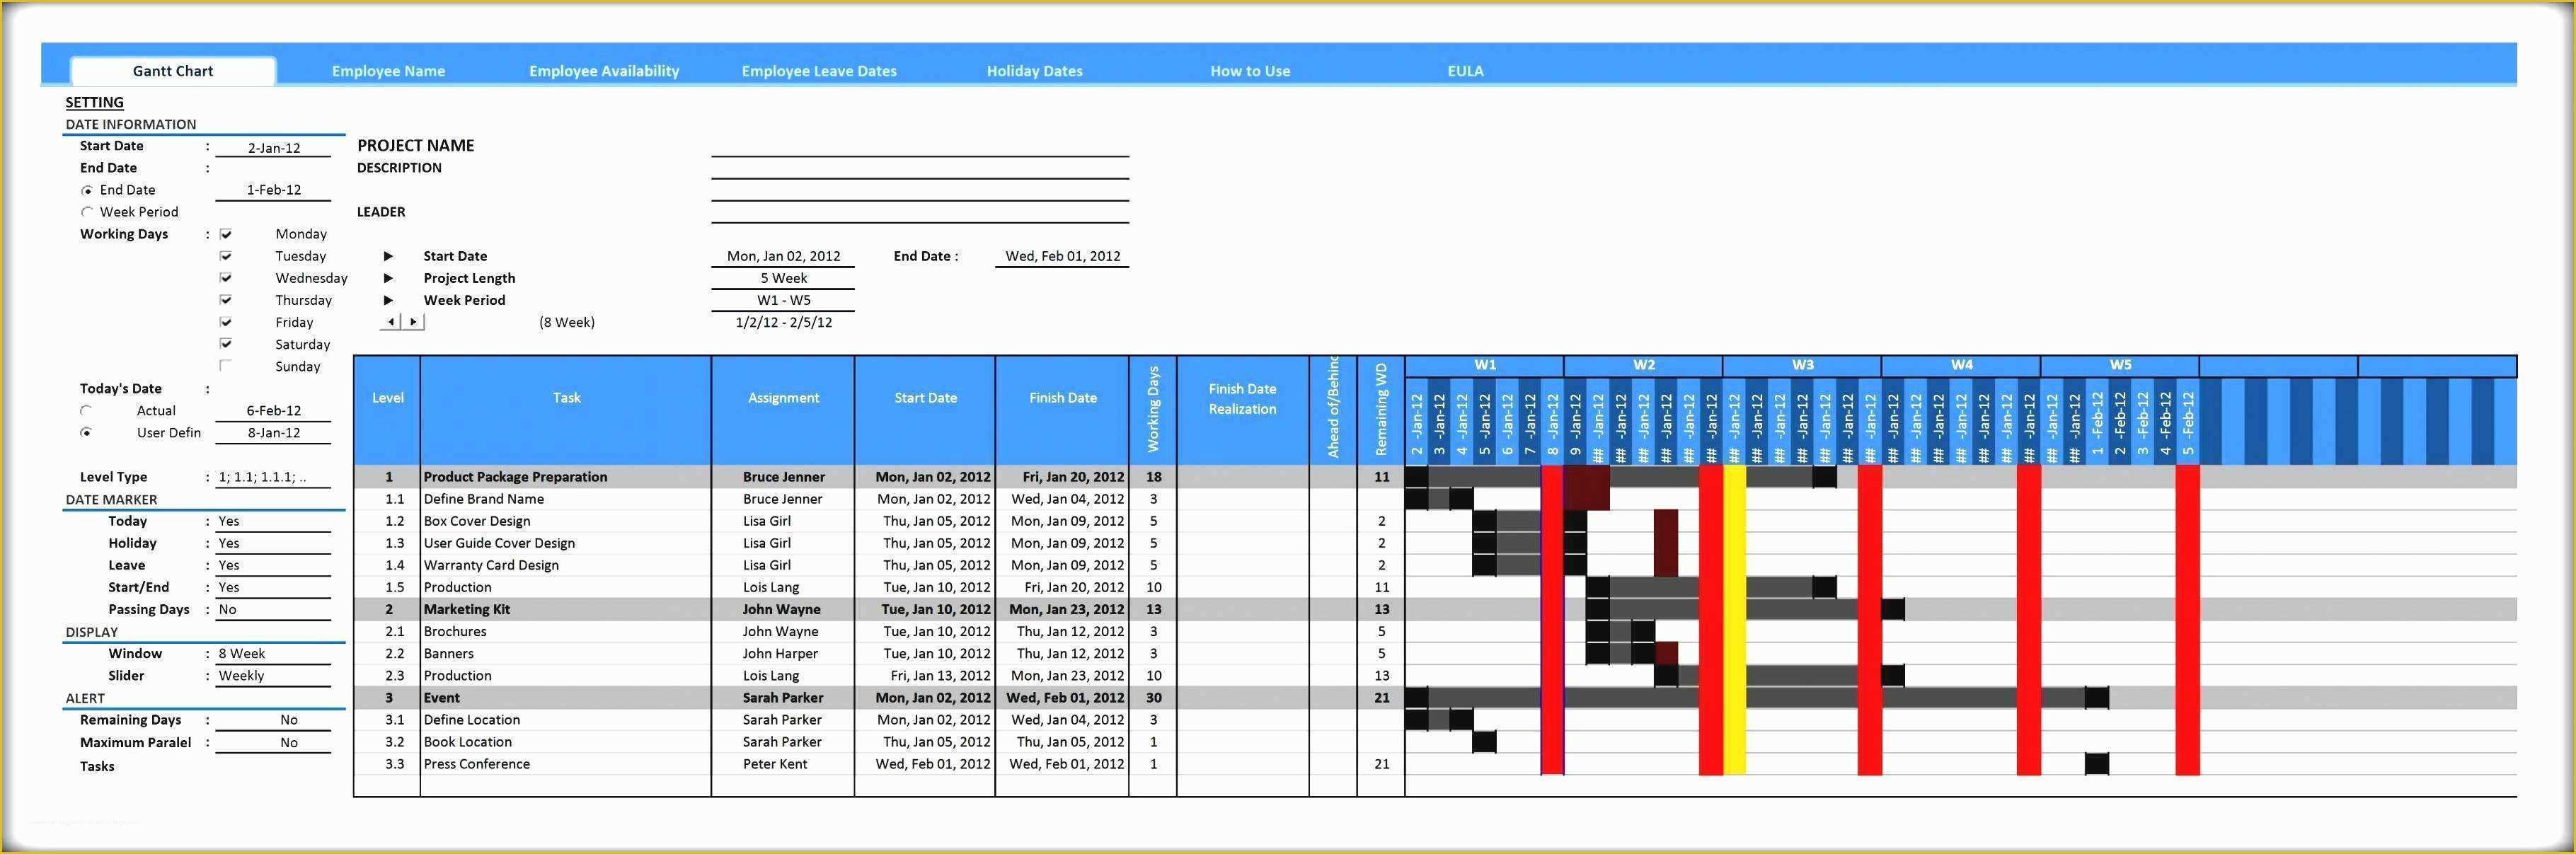 Microsoft Excel Gantt Chart Template Free Download Of Inspirational Simple Microsoft Excel Gantt Chart Template